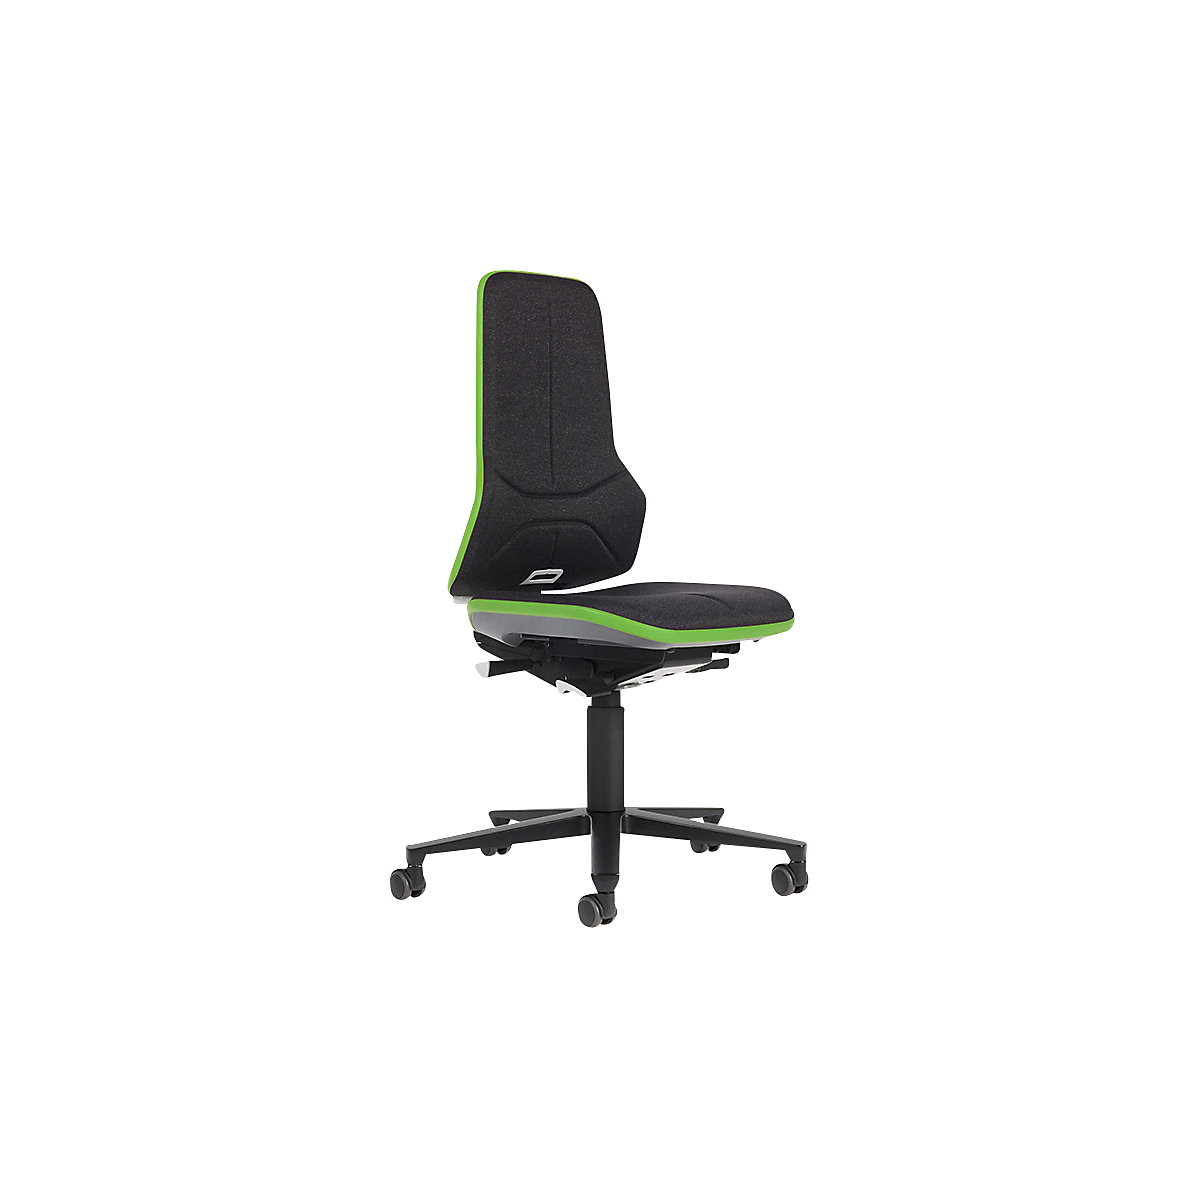 bimos – Siège d'atelier NEON, assise en tissu, bande flexible verte